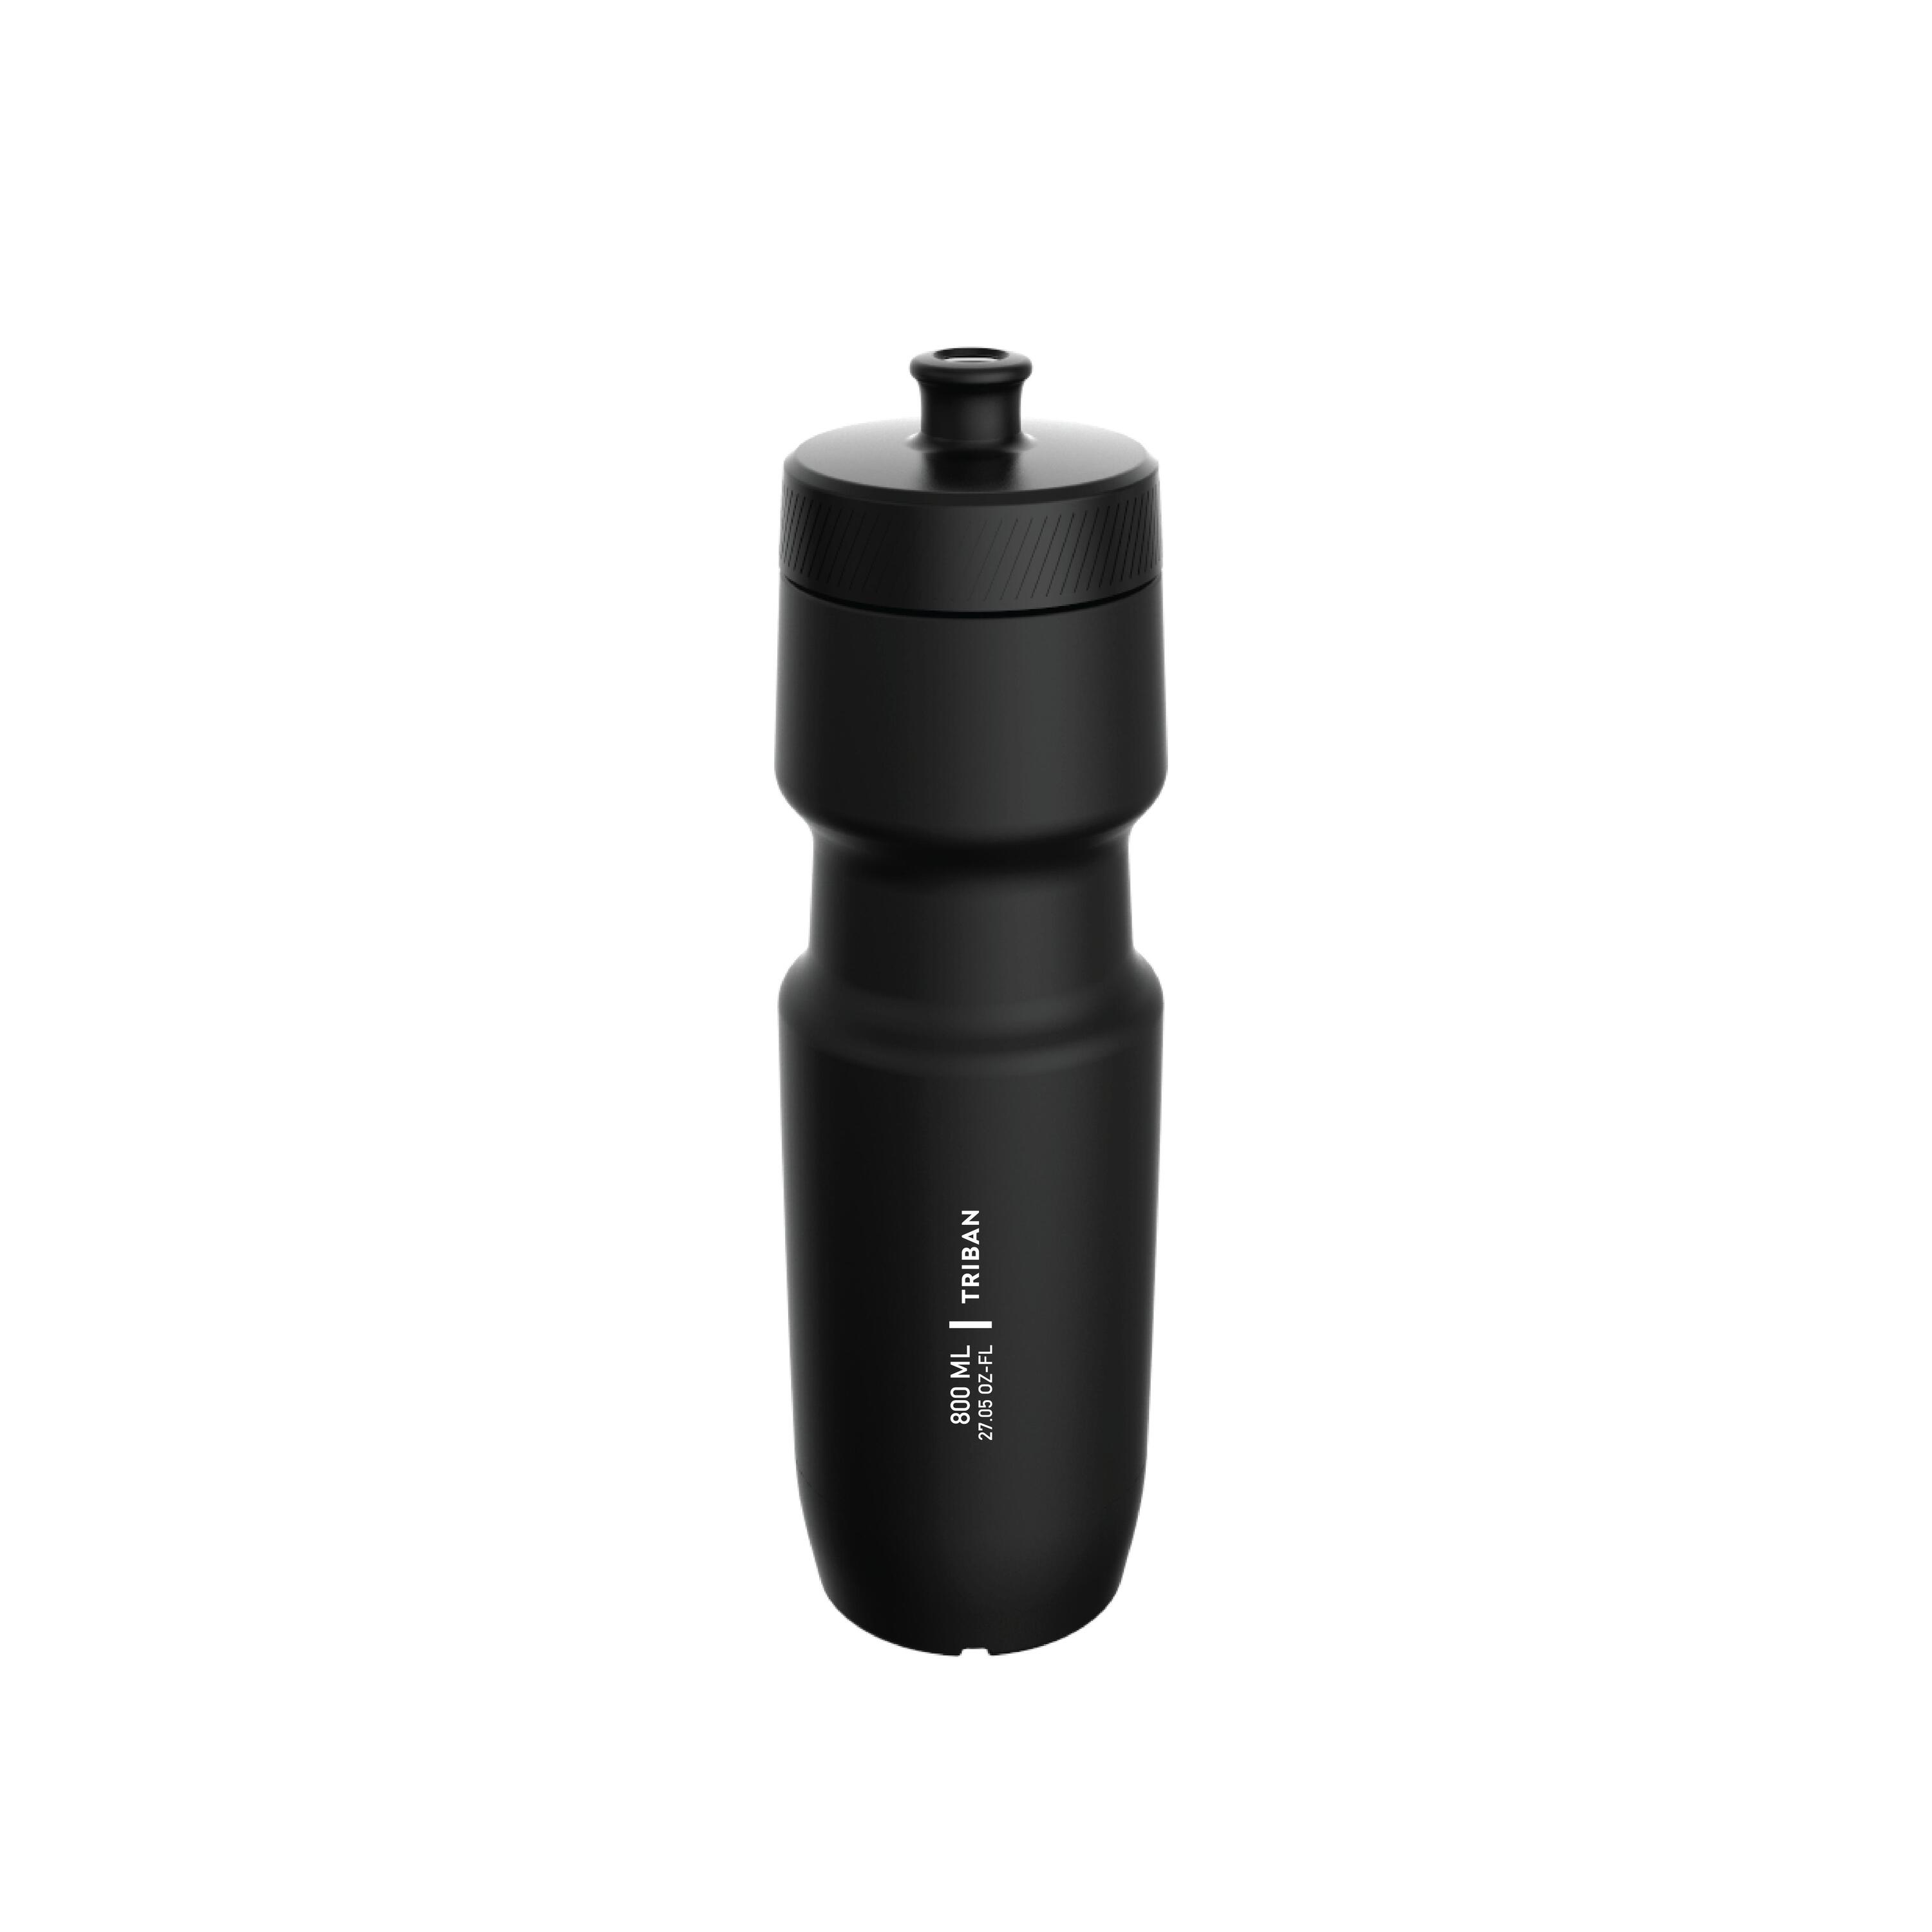 800 ml L Cycling Water Bottle SoftFlow - Black 4/4